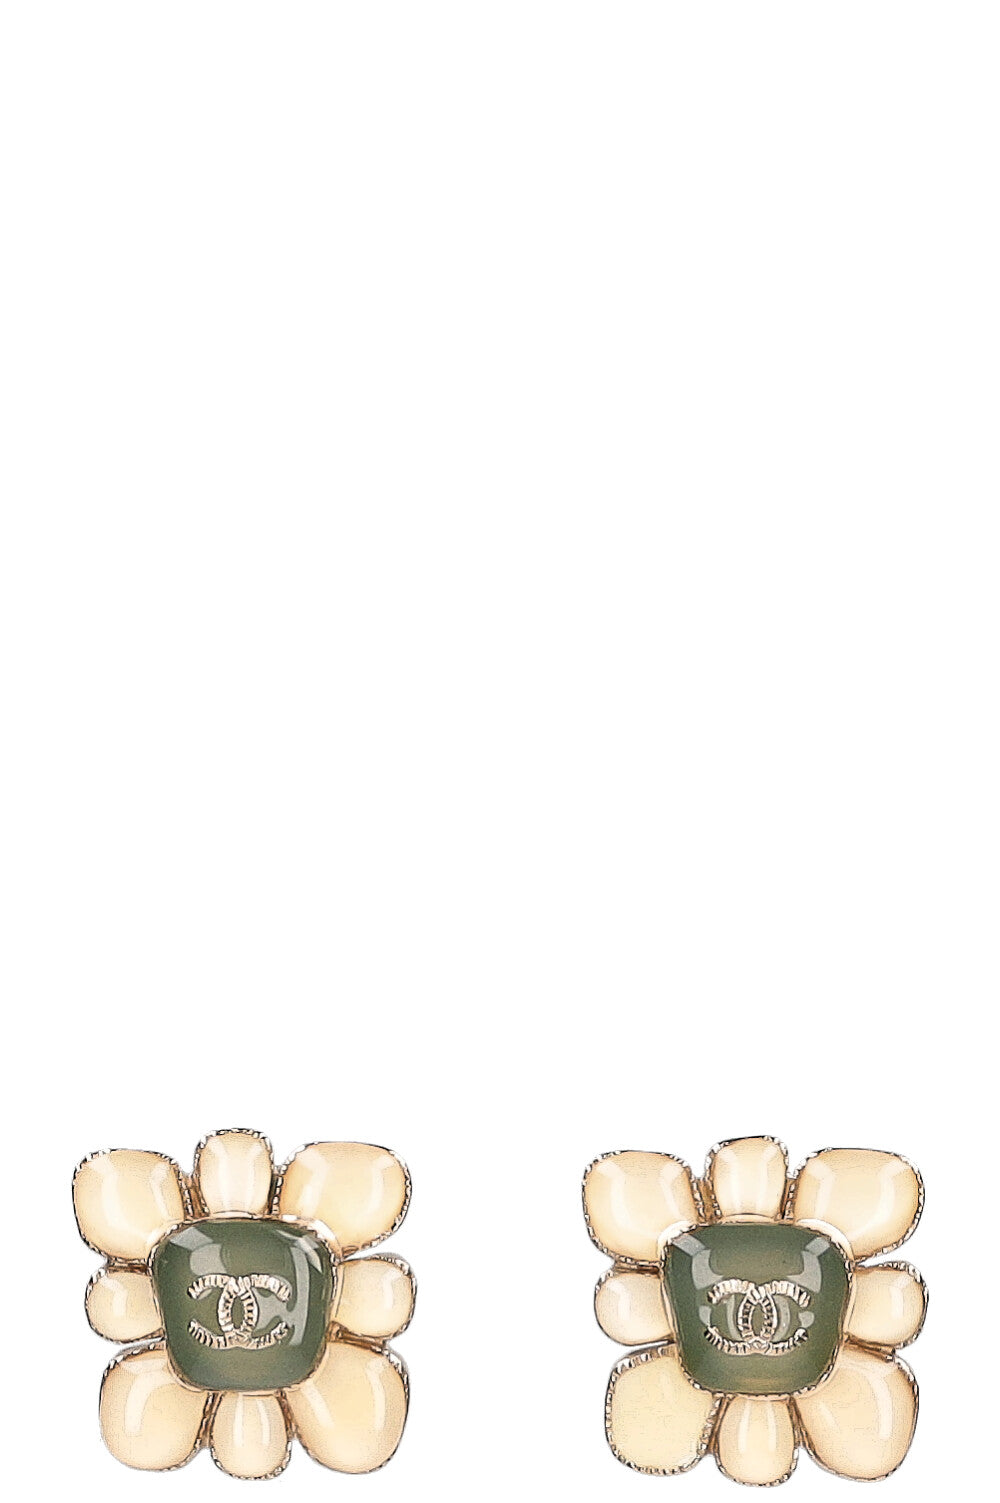 CHANEL Clip Earrings Flower Cruise 2016 Resin